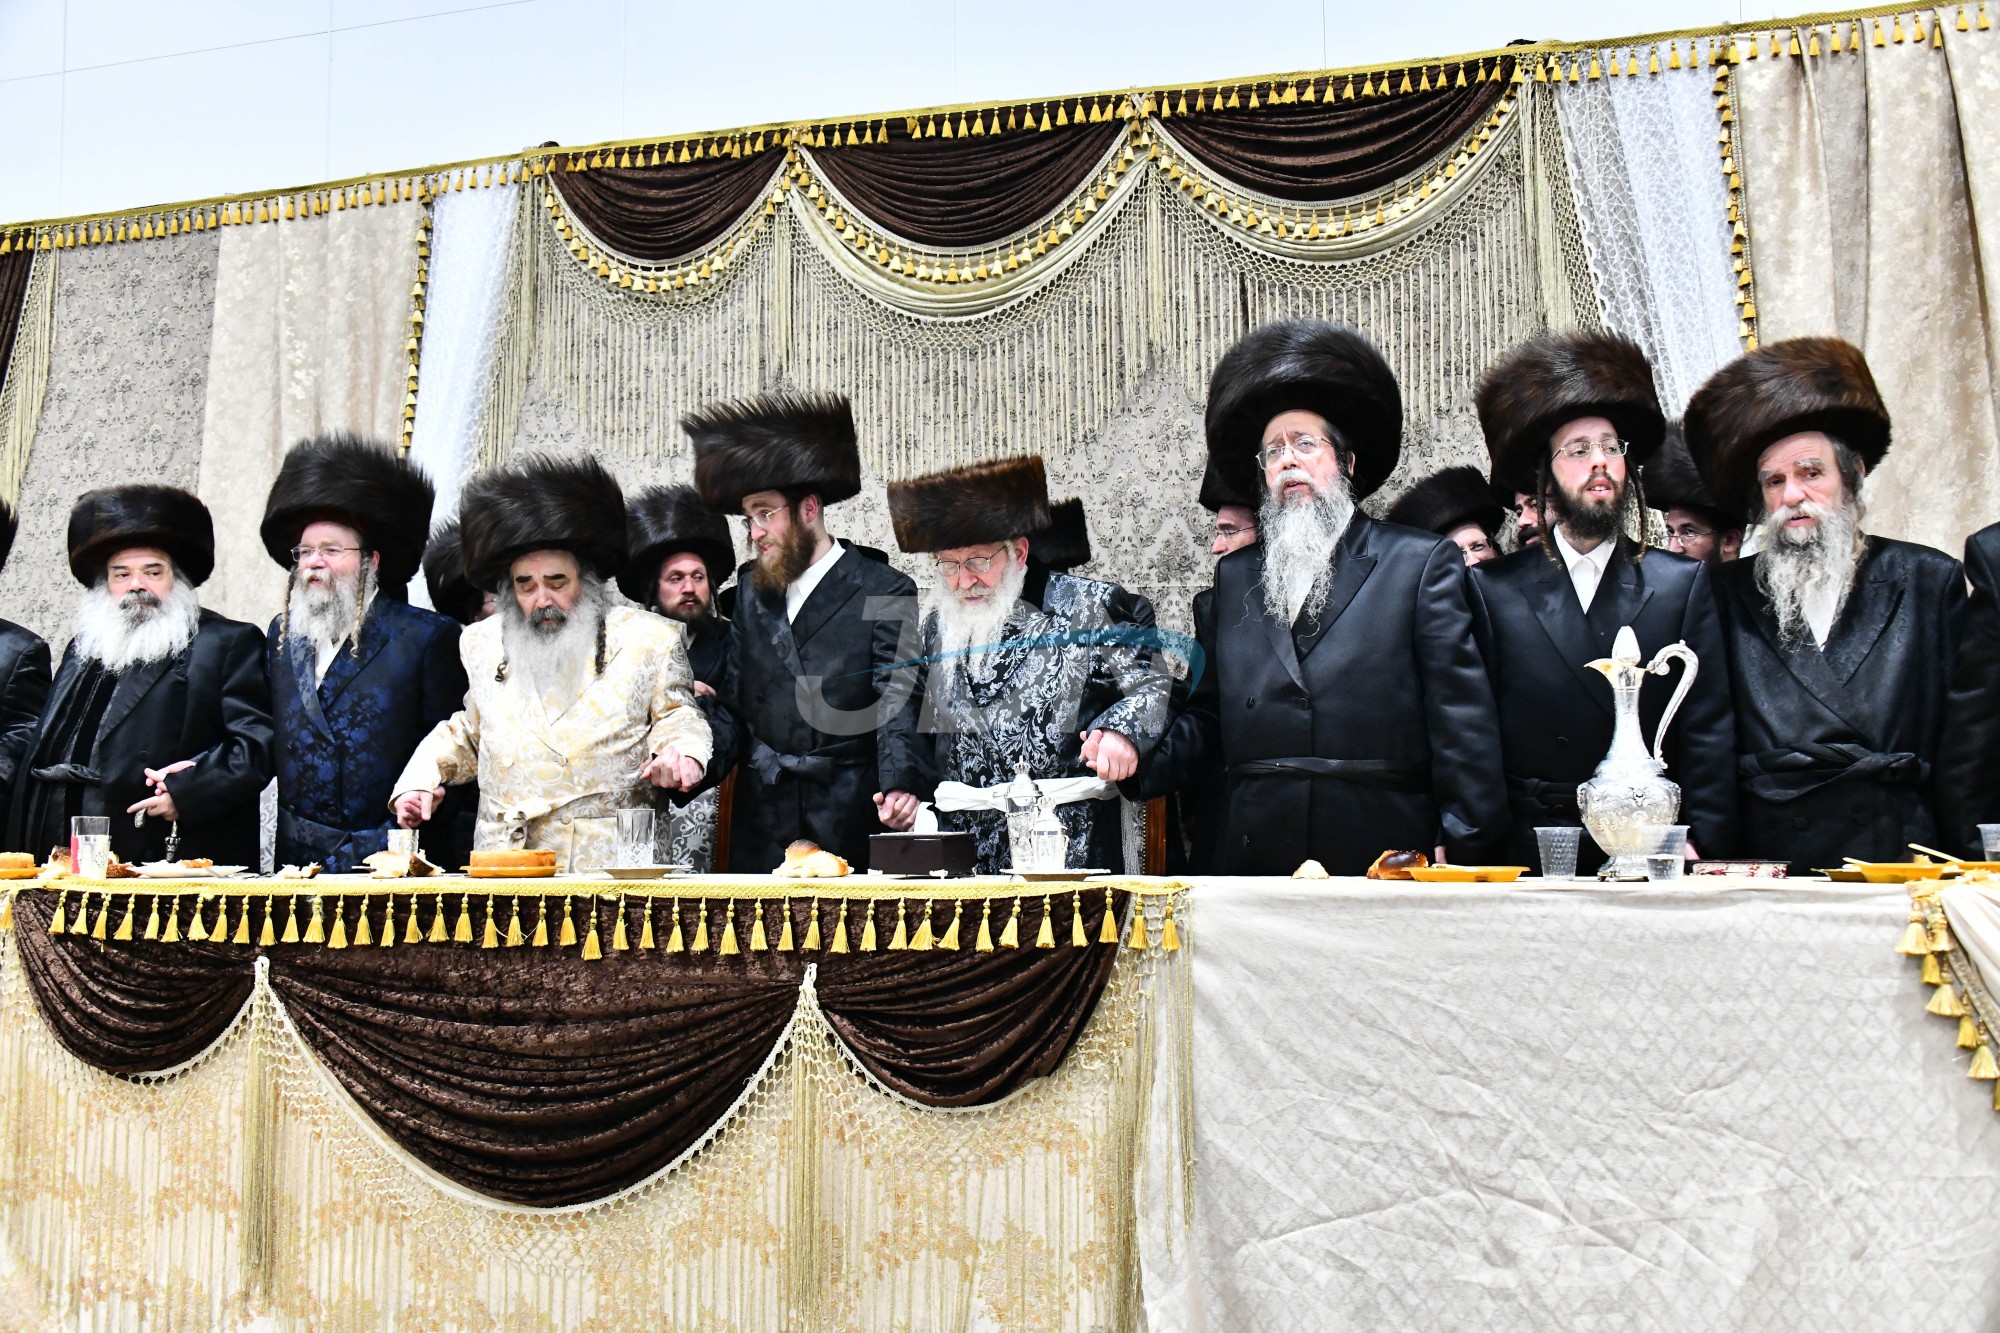 שמחת החתונה בבית שבט הלוי - זידיטשויב באר שבע - נדבורנה חיפה